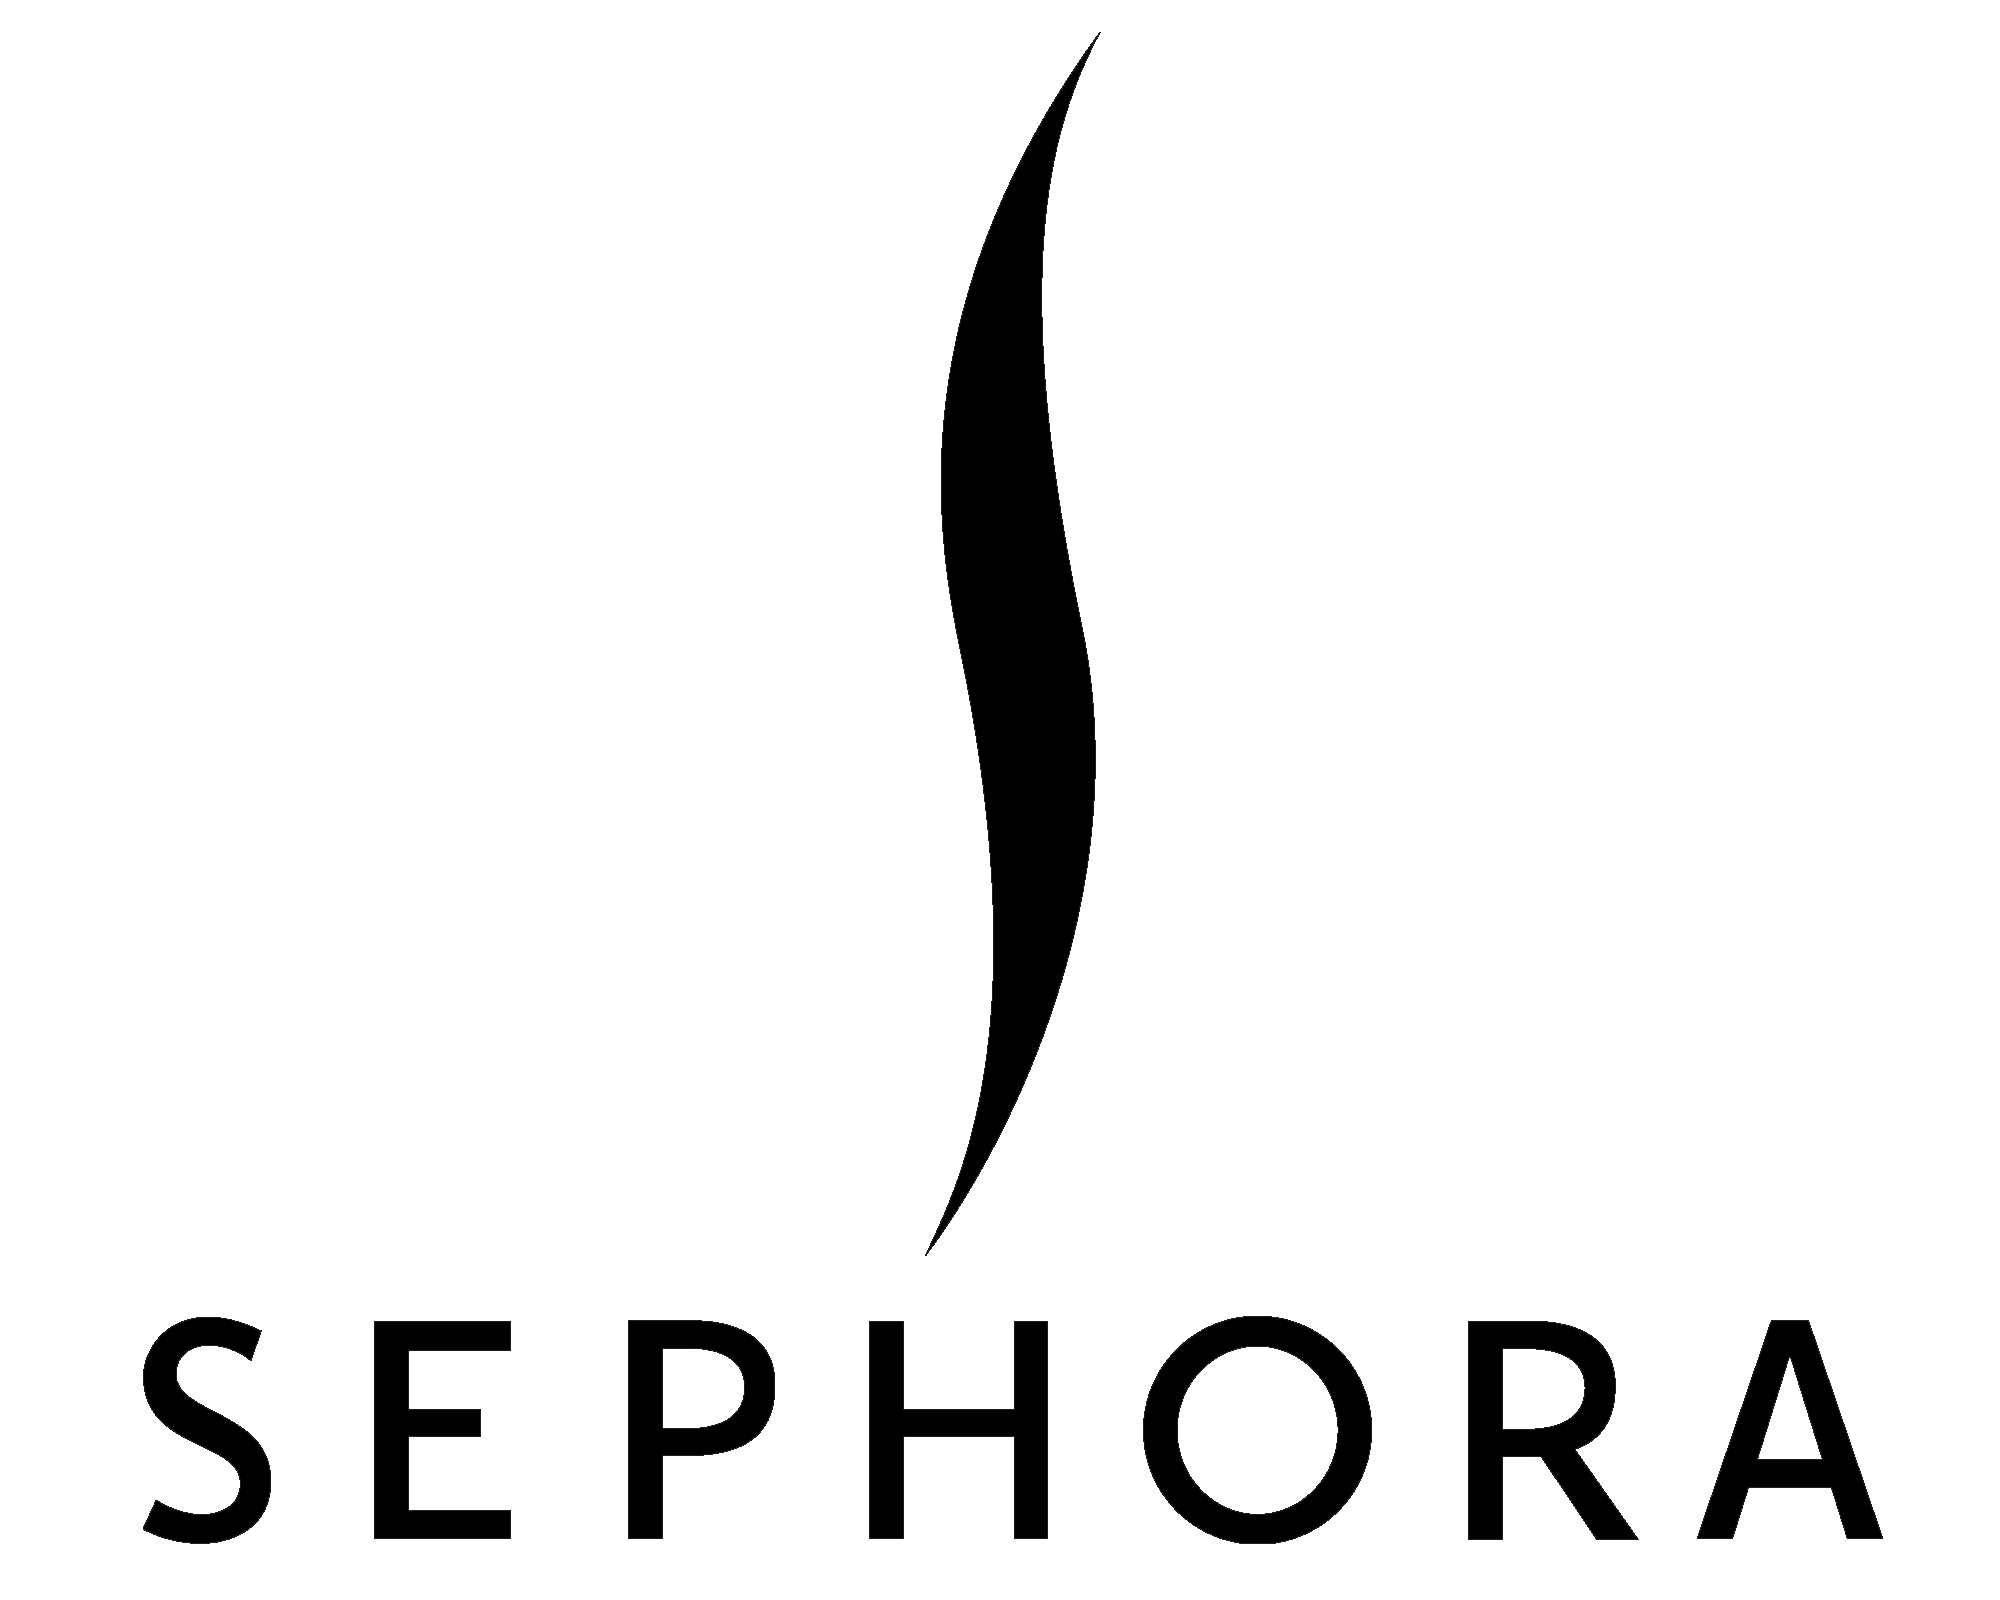 Sephora logo - download.